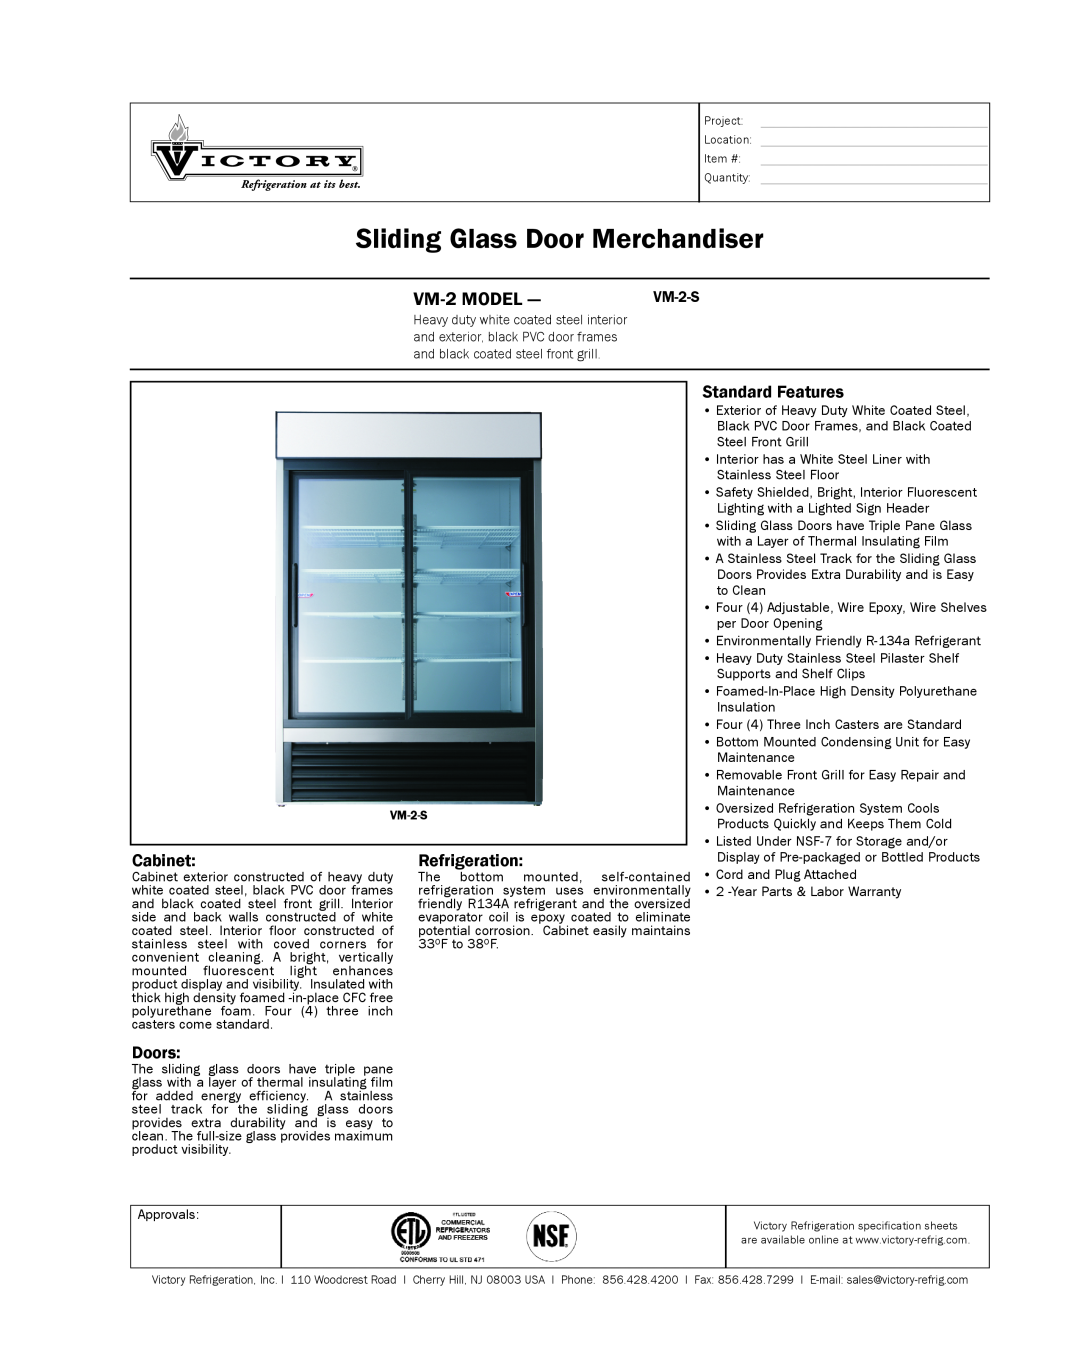 Victory Refrigeration VM-2S warranty Sliding Glass Door Merchandiser, VM-2MODEL, Standard Features, Cabinet, Refrigeration 